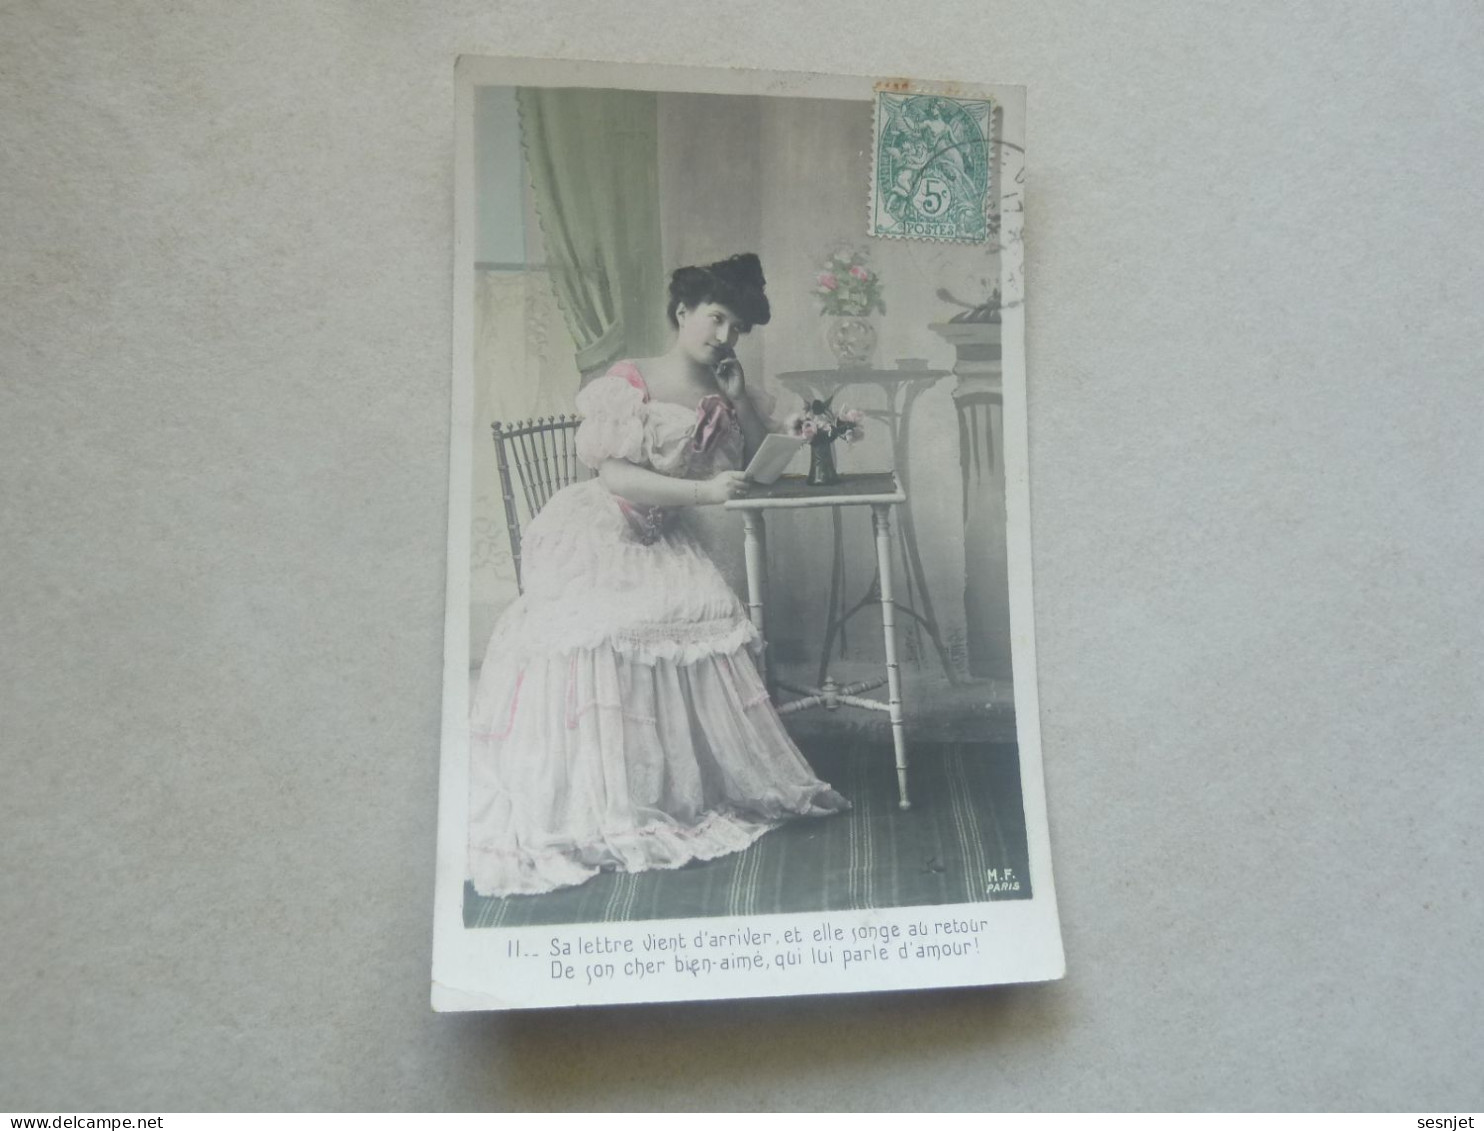 Aix-les-Bains - Sa Lettre Vient D'arriver - 18-4 - Yt 111 - Editions M.f. Paris - Année 1907 - - Frauen